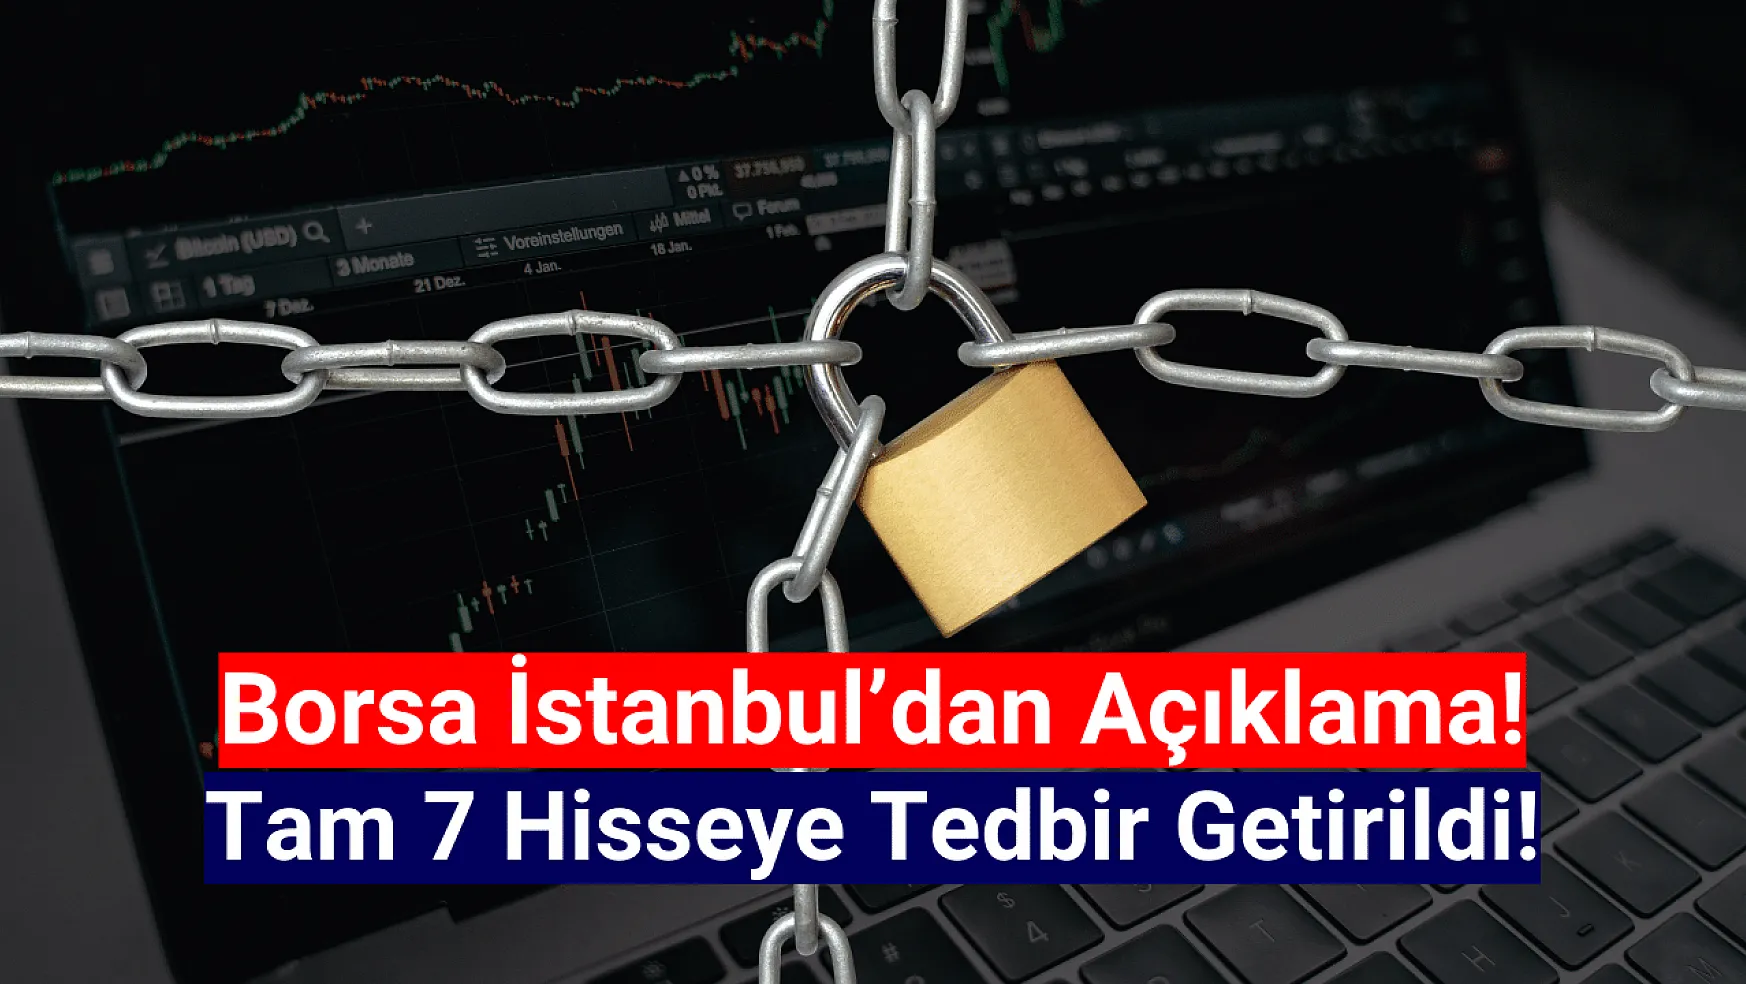 Borsa İstanbul'da tam 7 hisseye tedbir getirildi!